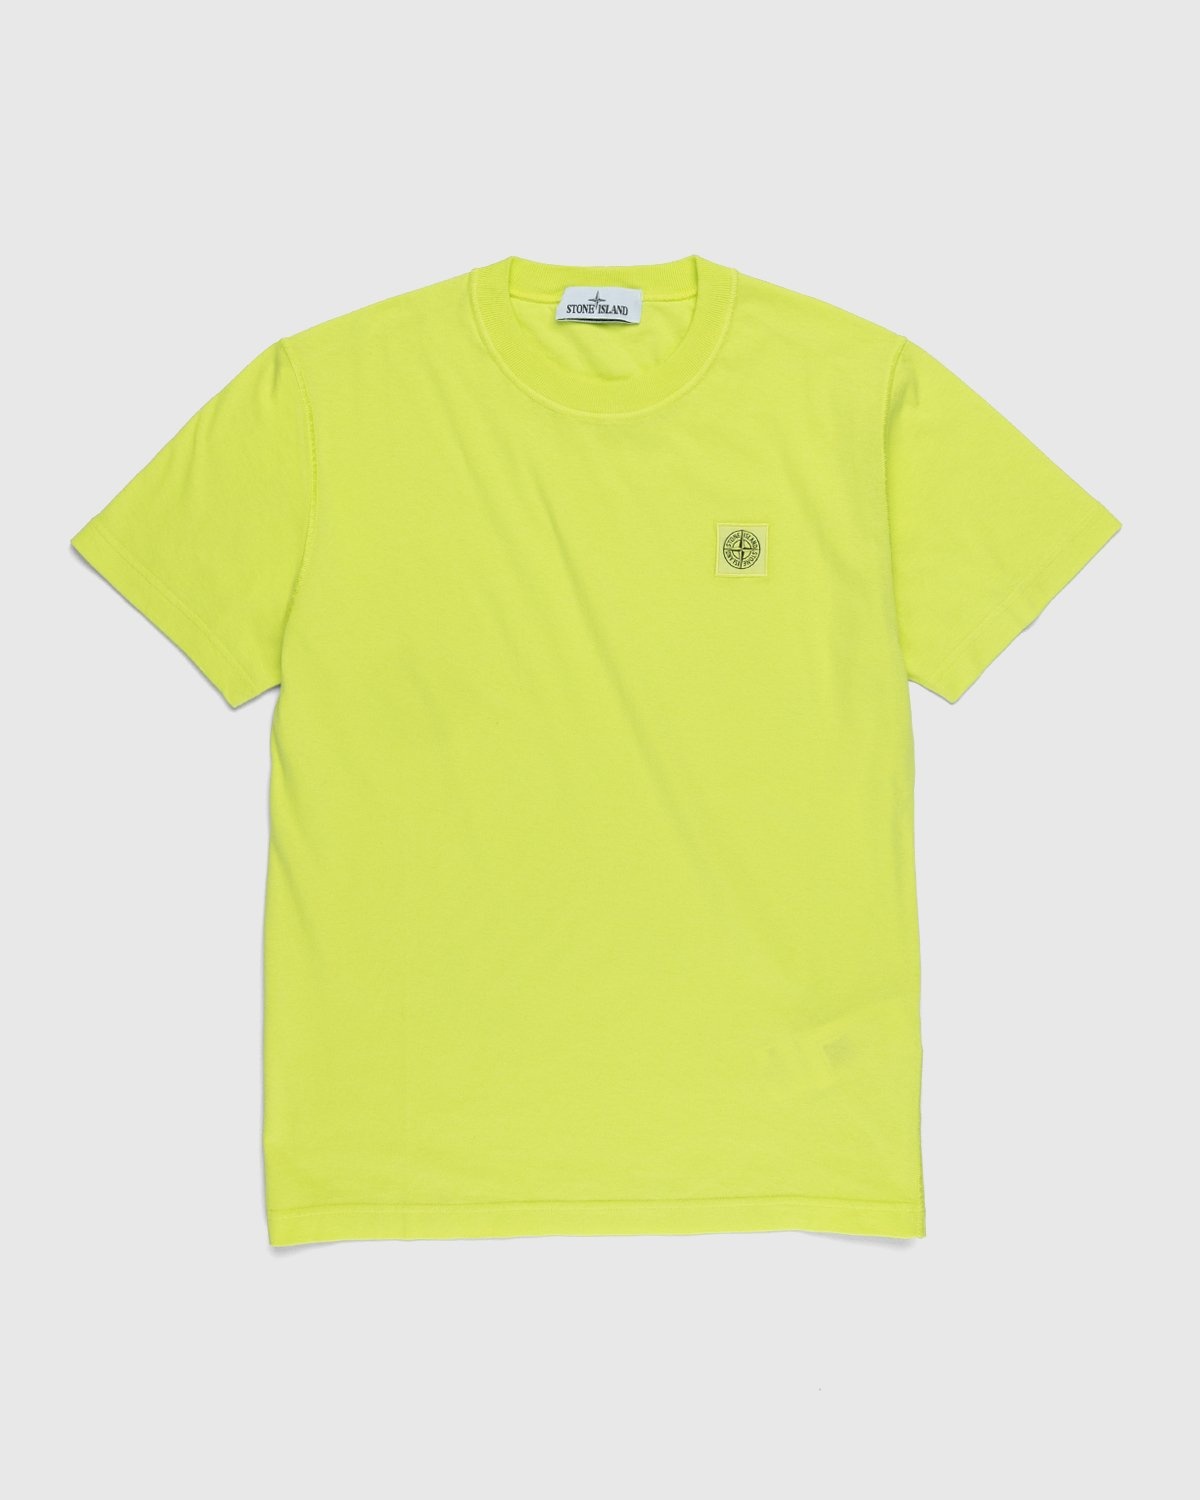 Stone Island – 23757 Garment-Dyed Fissato T-Shirt Lemon - T-shirts - Yellow - Image 1